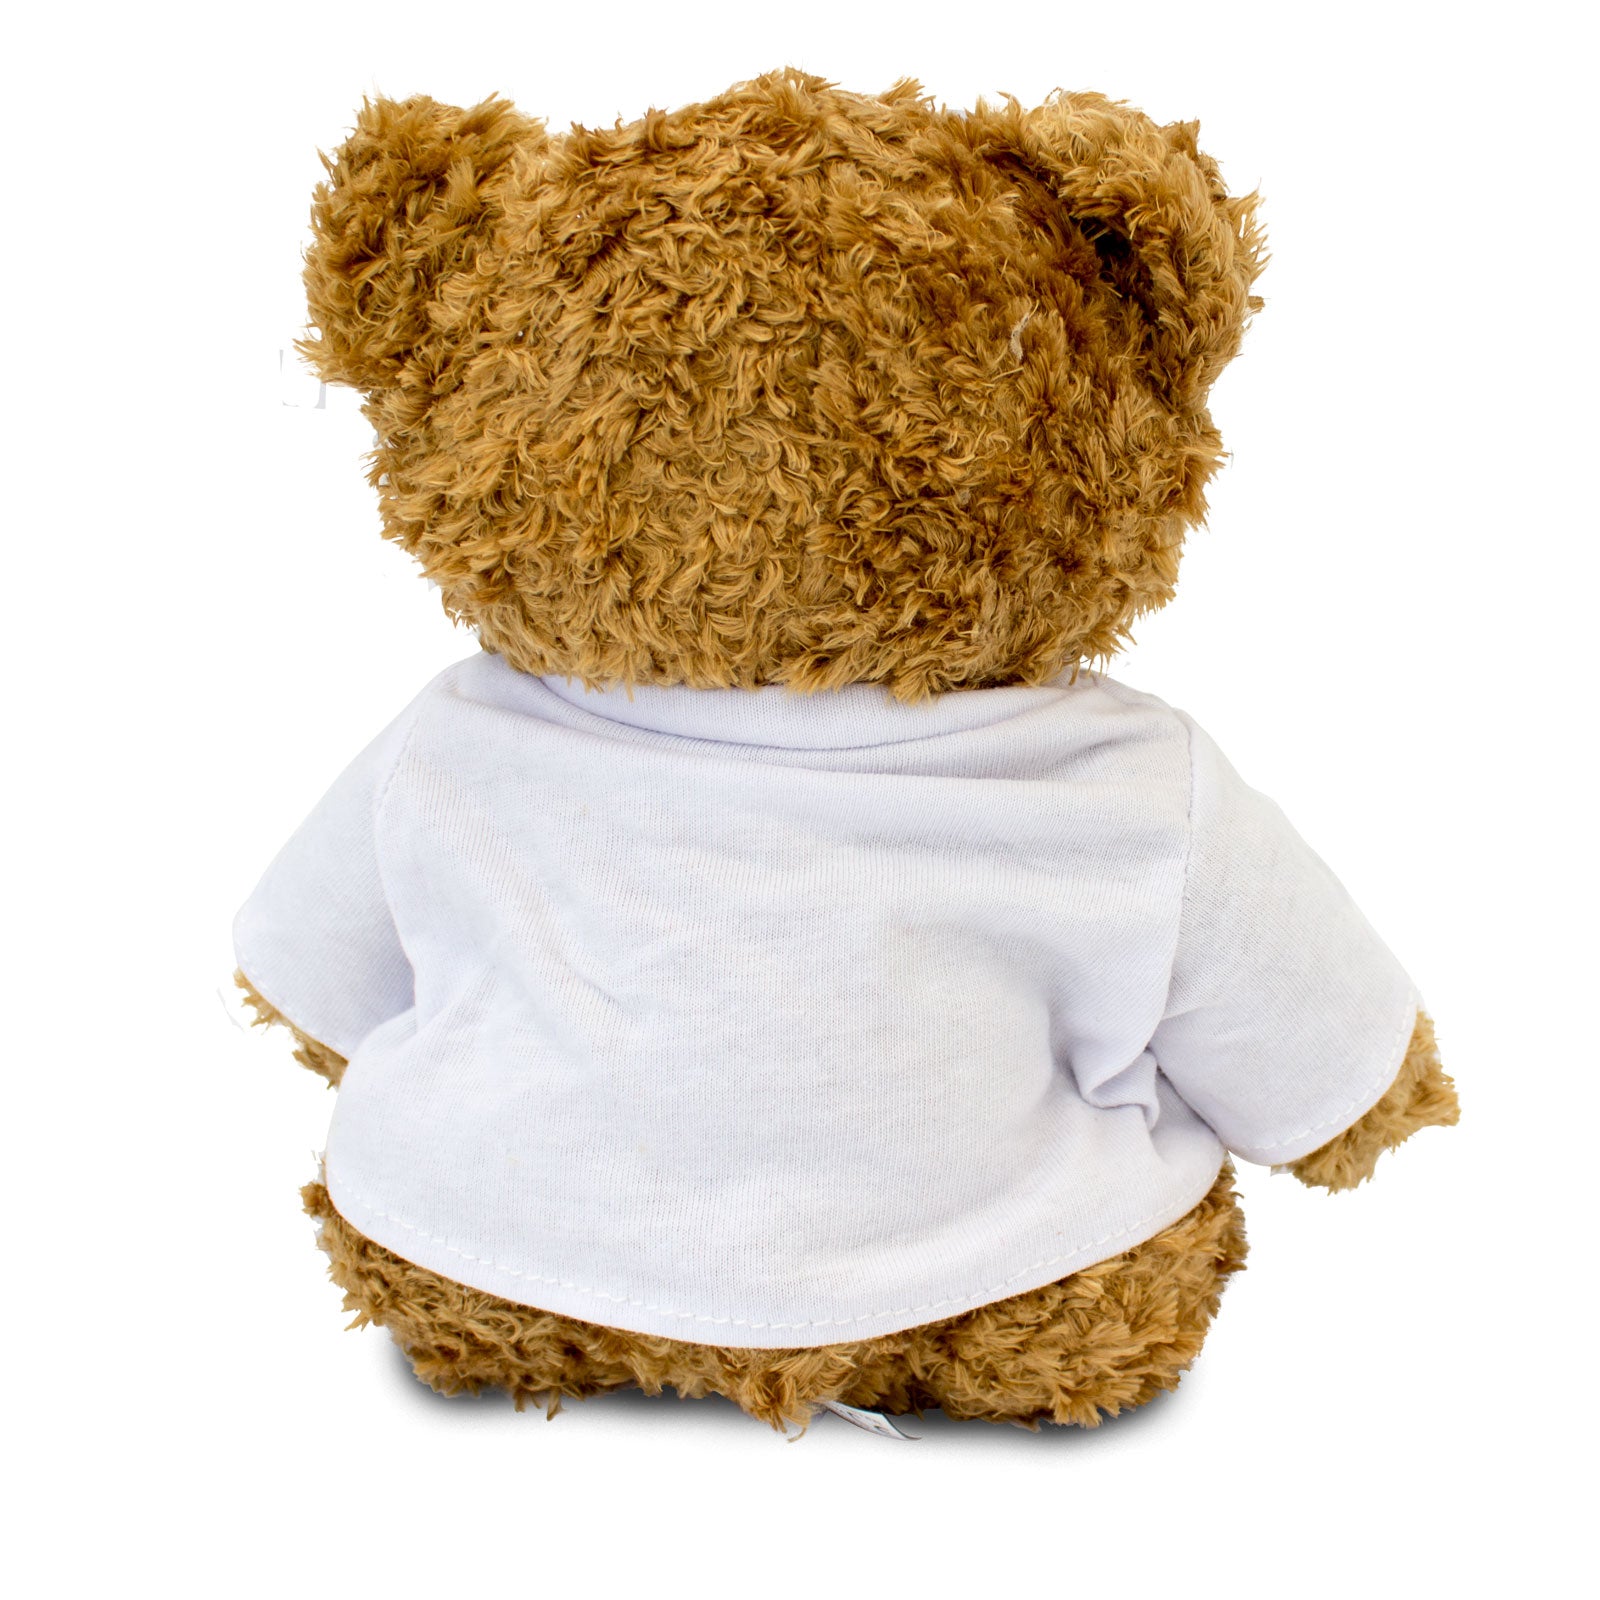 Get Well Soon Ed - Teddy Bear